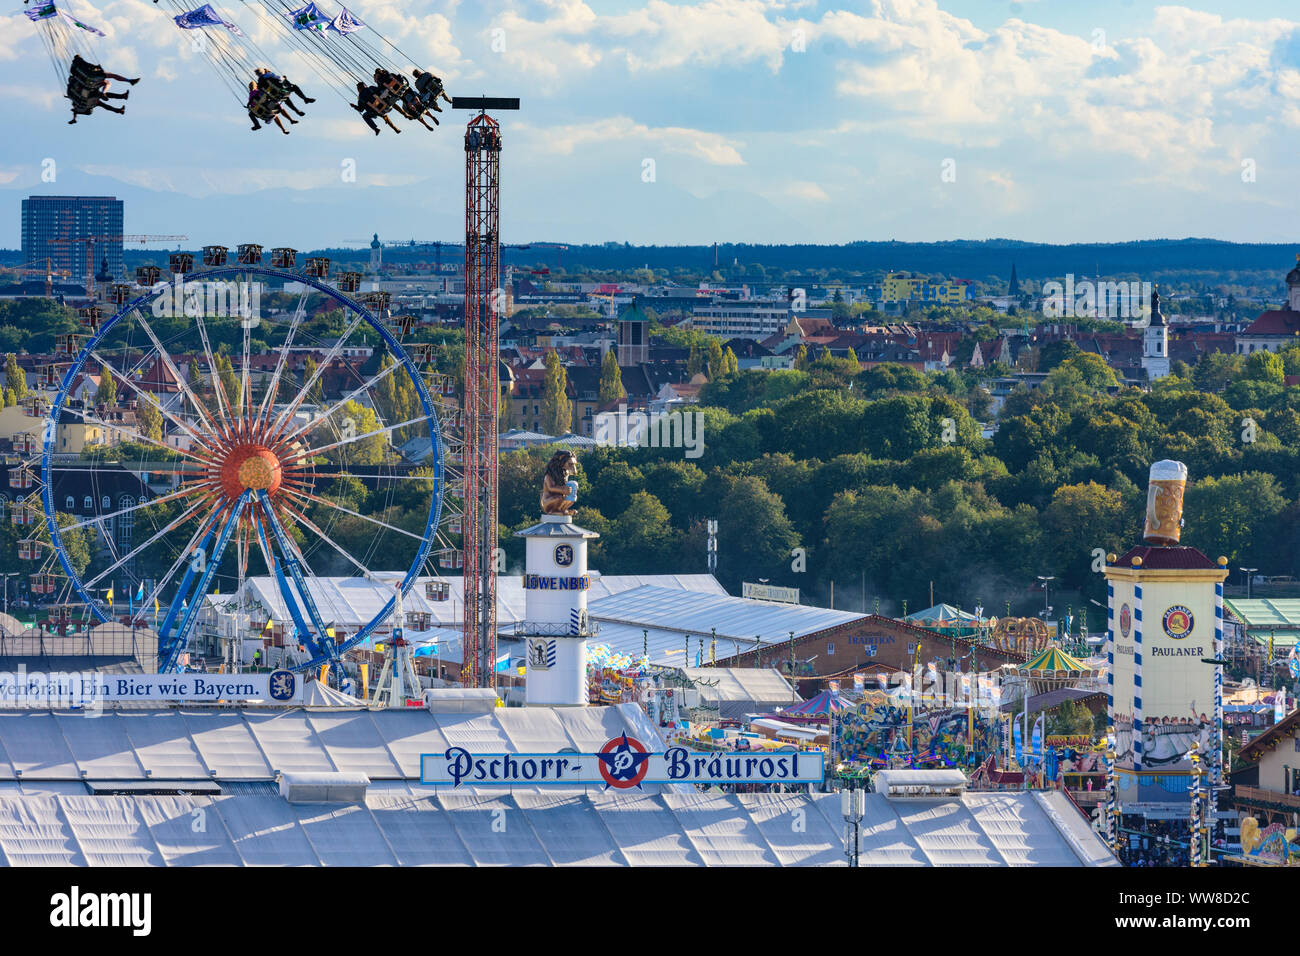 MÃ¼Nchen, Monaco, festival della birra Oktoberfest, visualizzare la birra tenda, corse, roller coaster, ruota panoramica Ferris, giostra Starflyer, Alta Baviera, Baviera, Germania Foto Stock